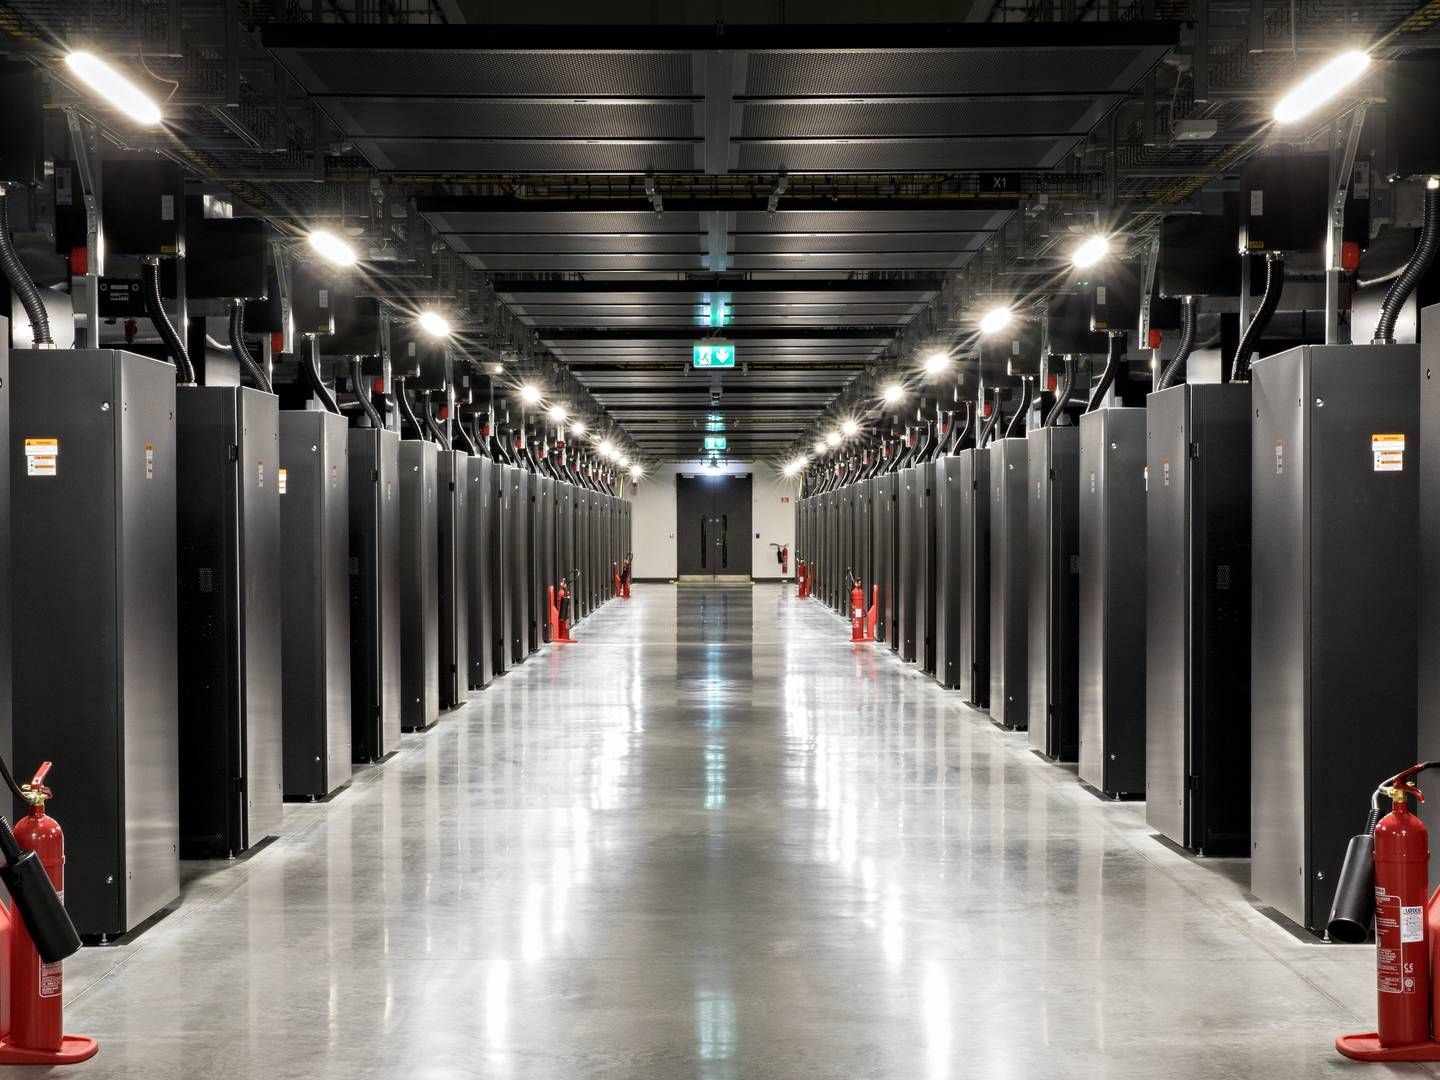 Indenfor i Facebooks nye datacenter i Odense. Her ses et netværksrum, hvor servere internt på datacentret kommunikerer med hinanden. | Foto: Jacob Ehrbahn / Politiken / Ritzau Scanpix